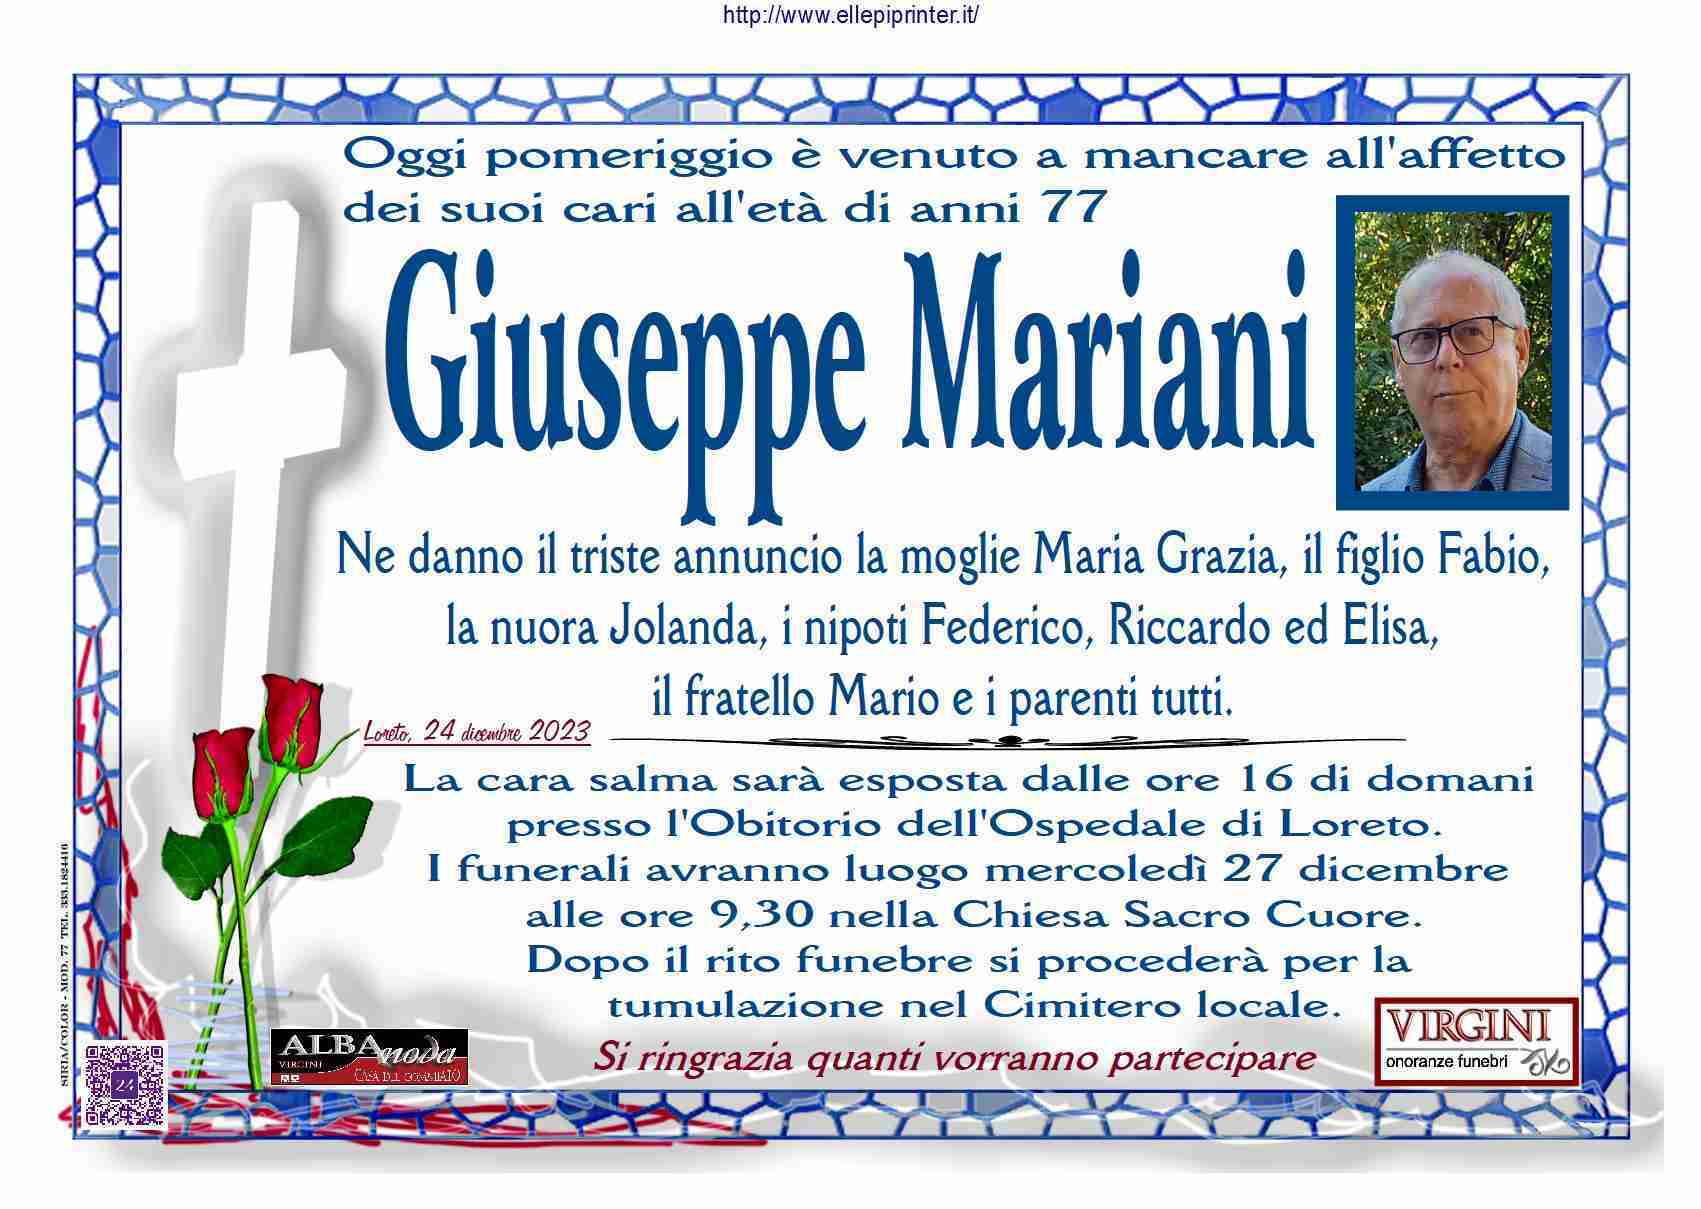 Giuseppe Mariani